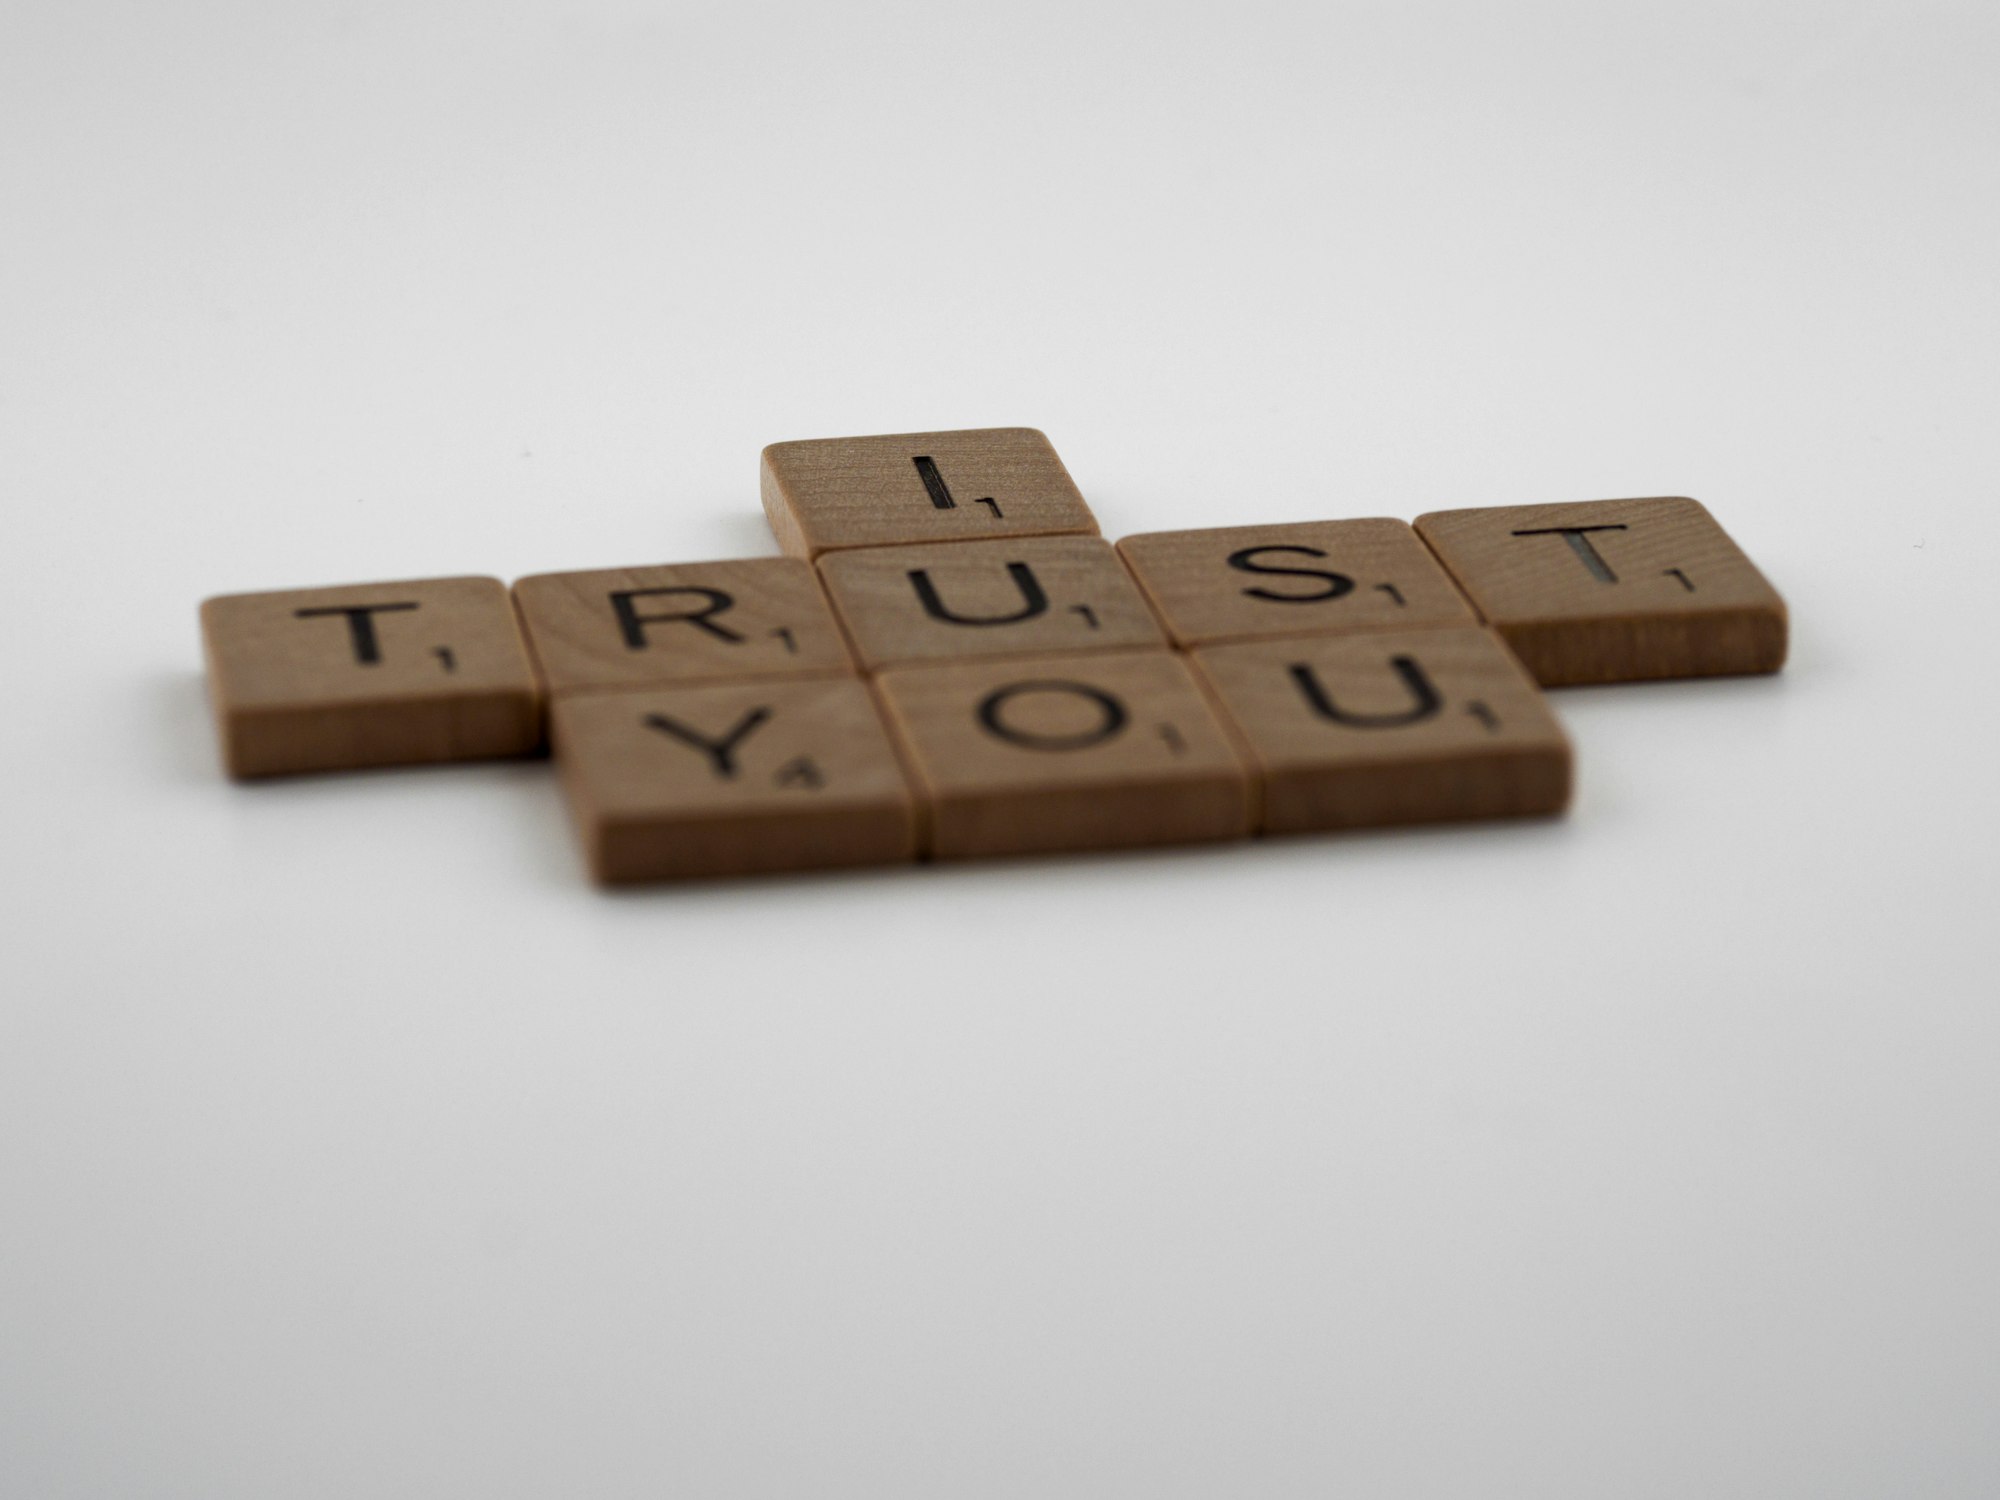 Building trust